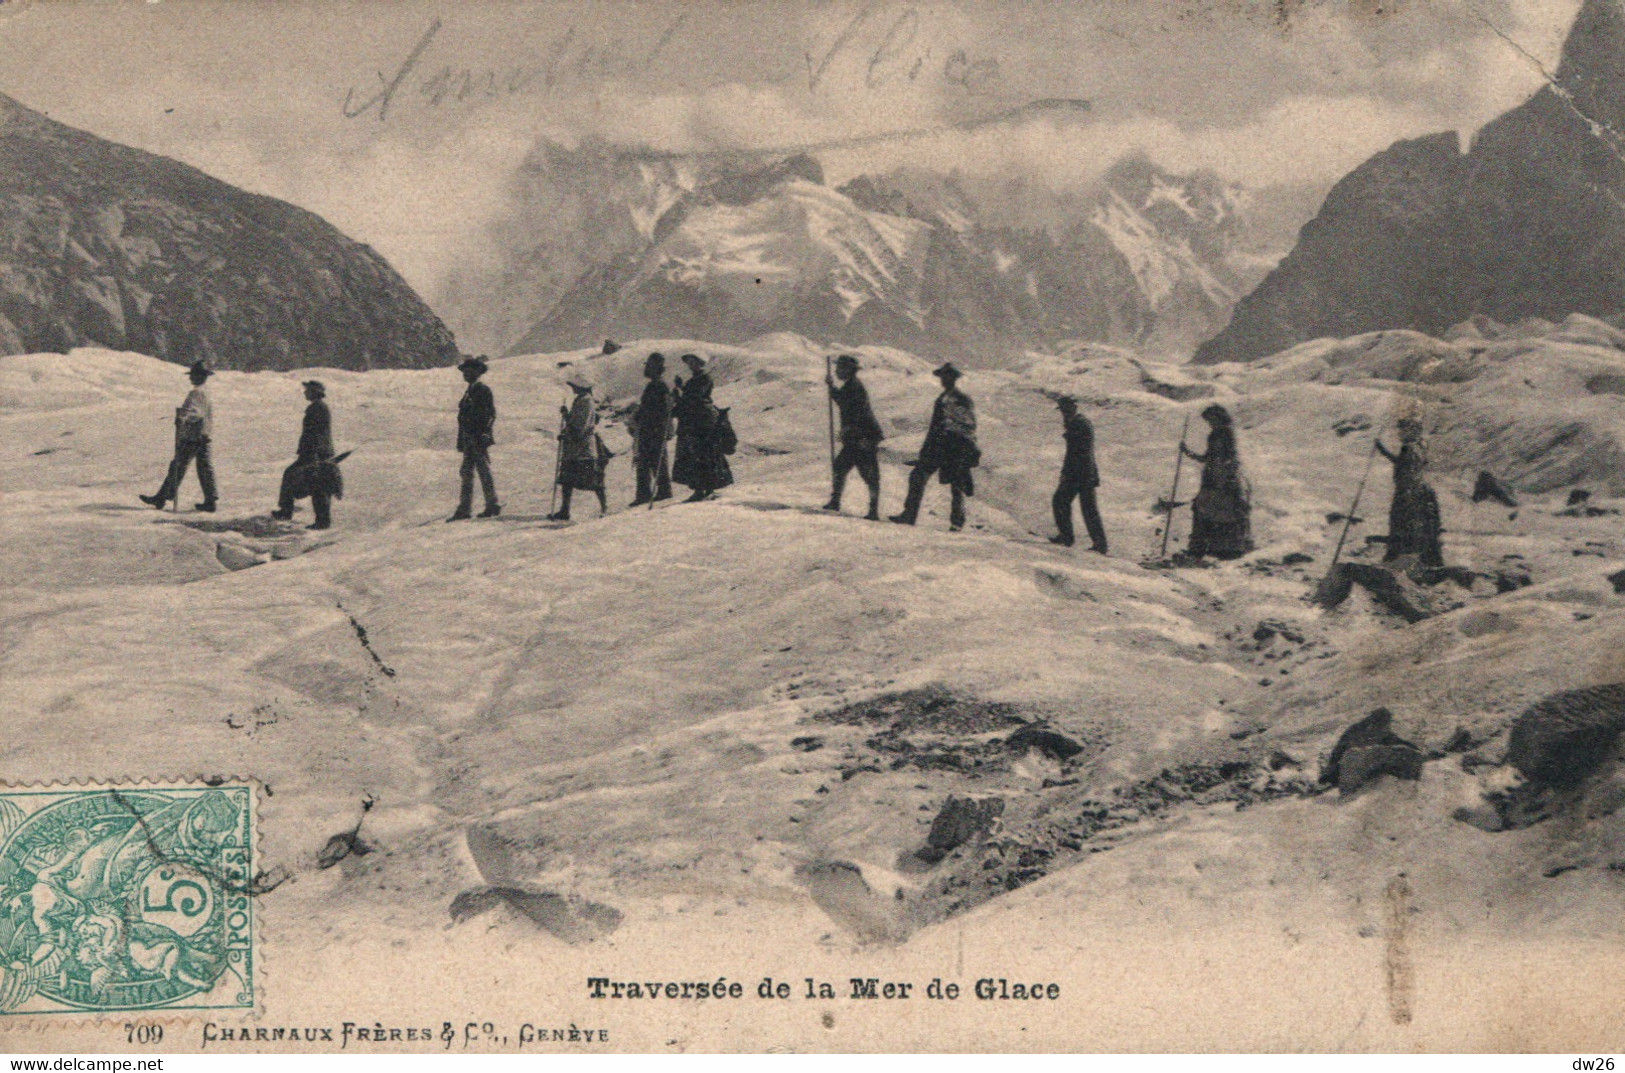 Alpinisme - Traversée De La Mer De Glace - Edition Charnaux Frères - Carte N° 709 - Mountaineering, Alpinism